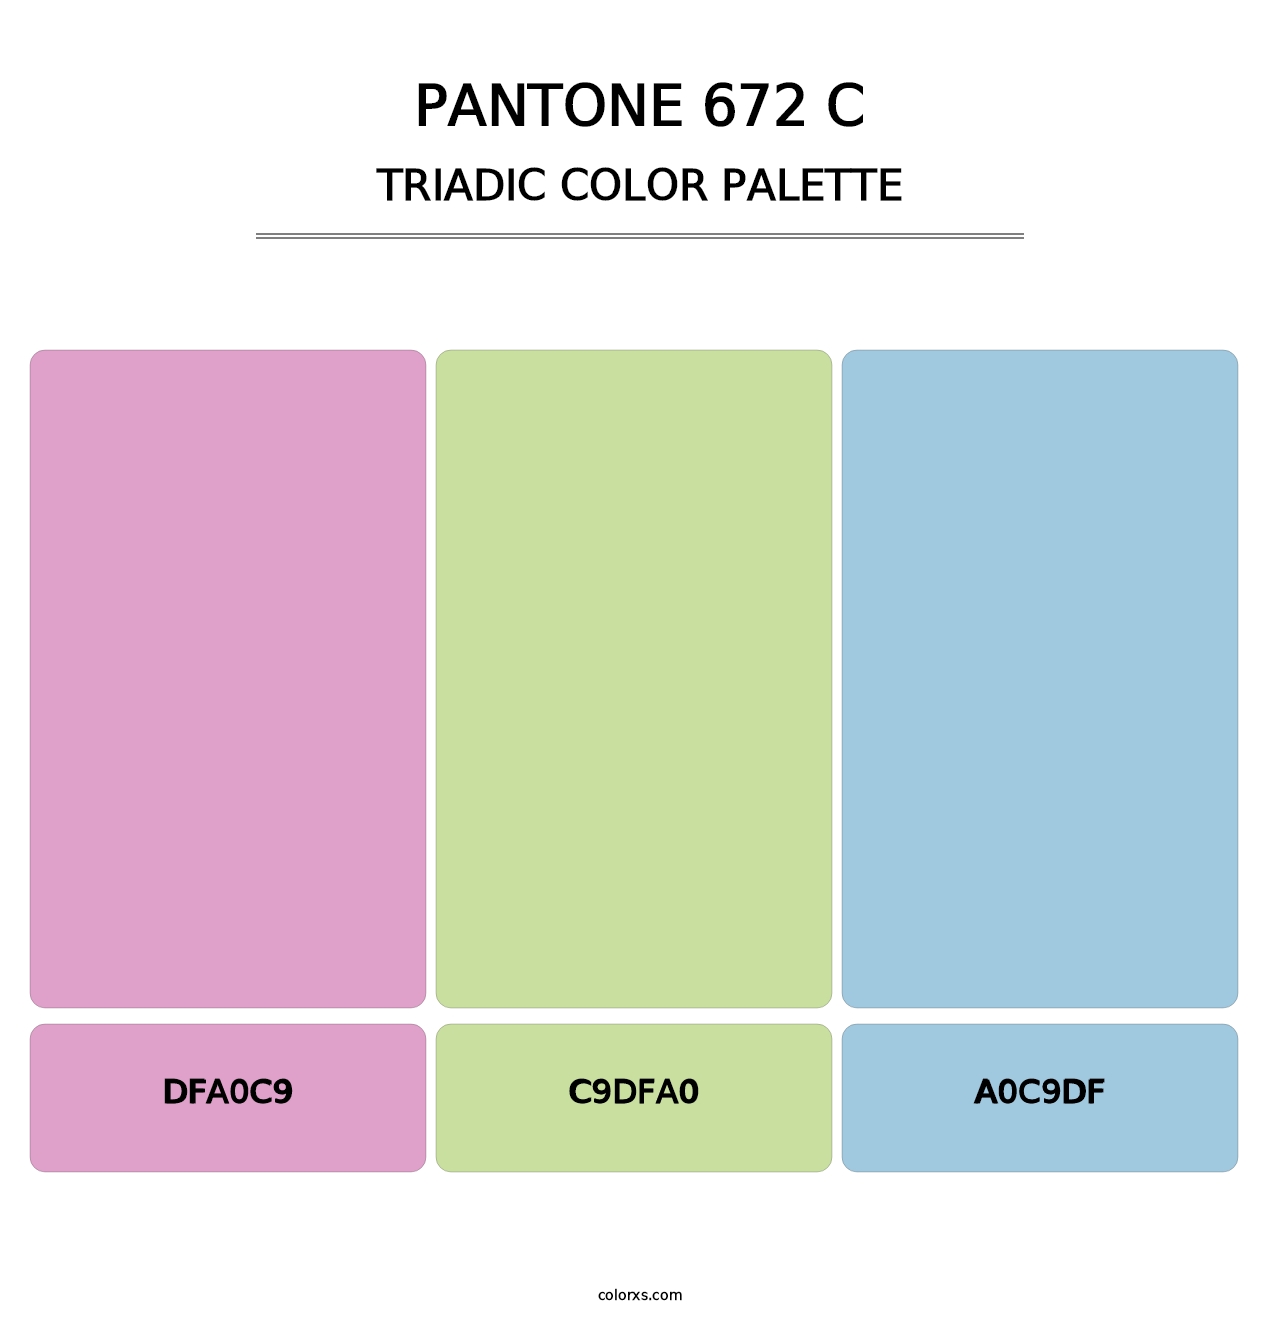 PANTONE 672 C - Triadic Color Palette